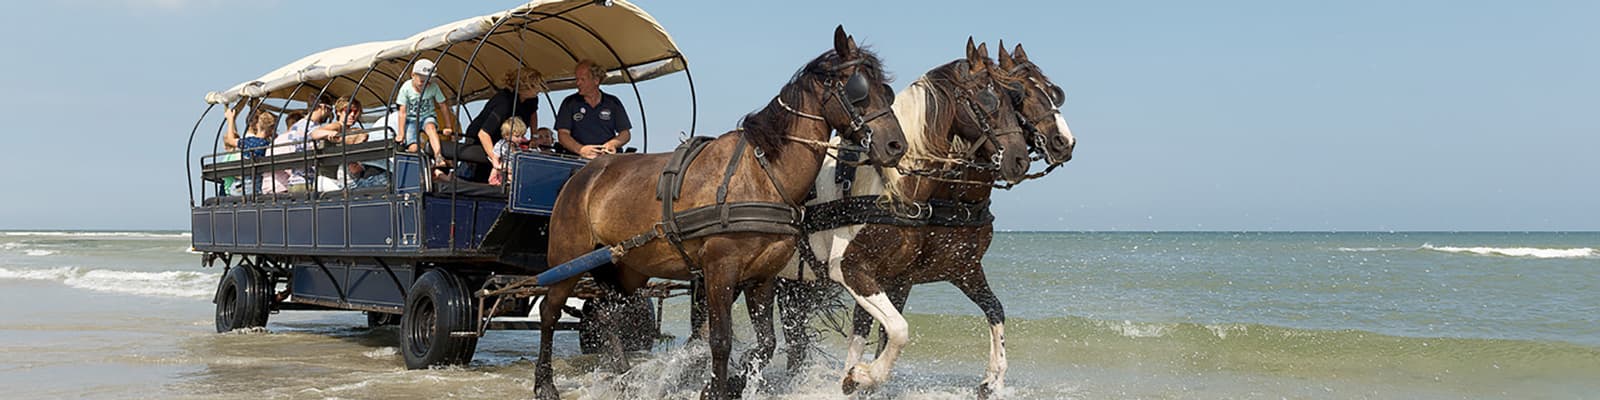 Huifkartochten paardrijden excursies en activiteiten